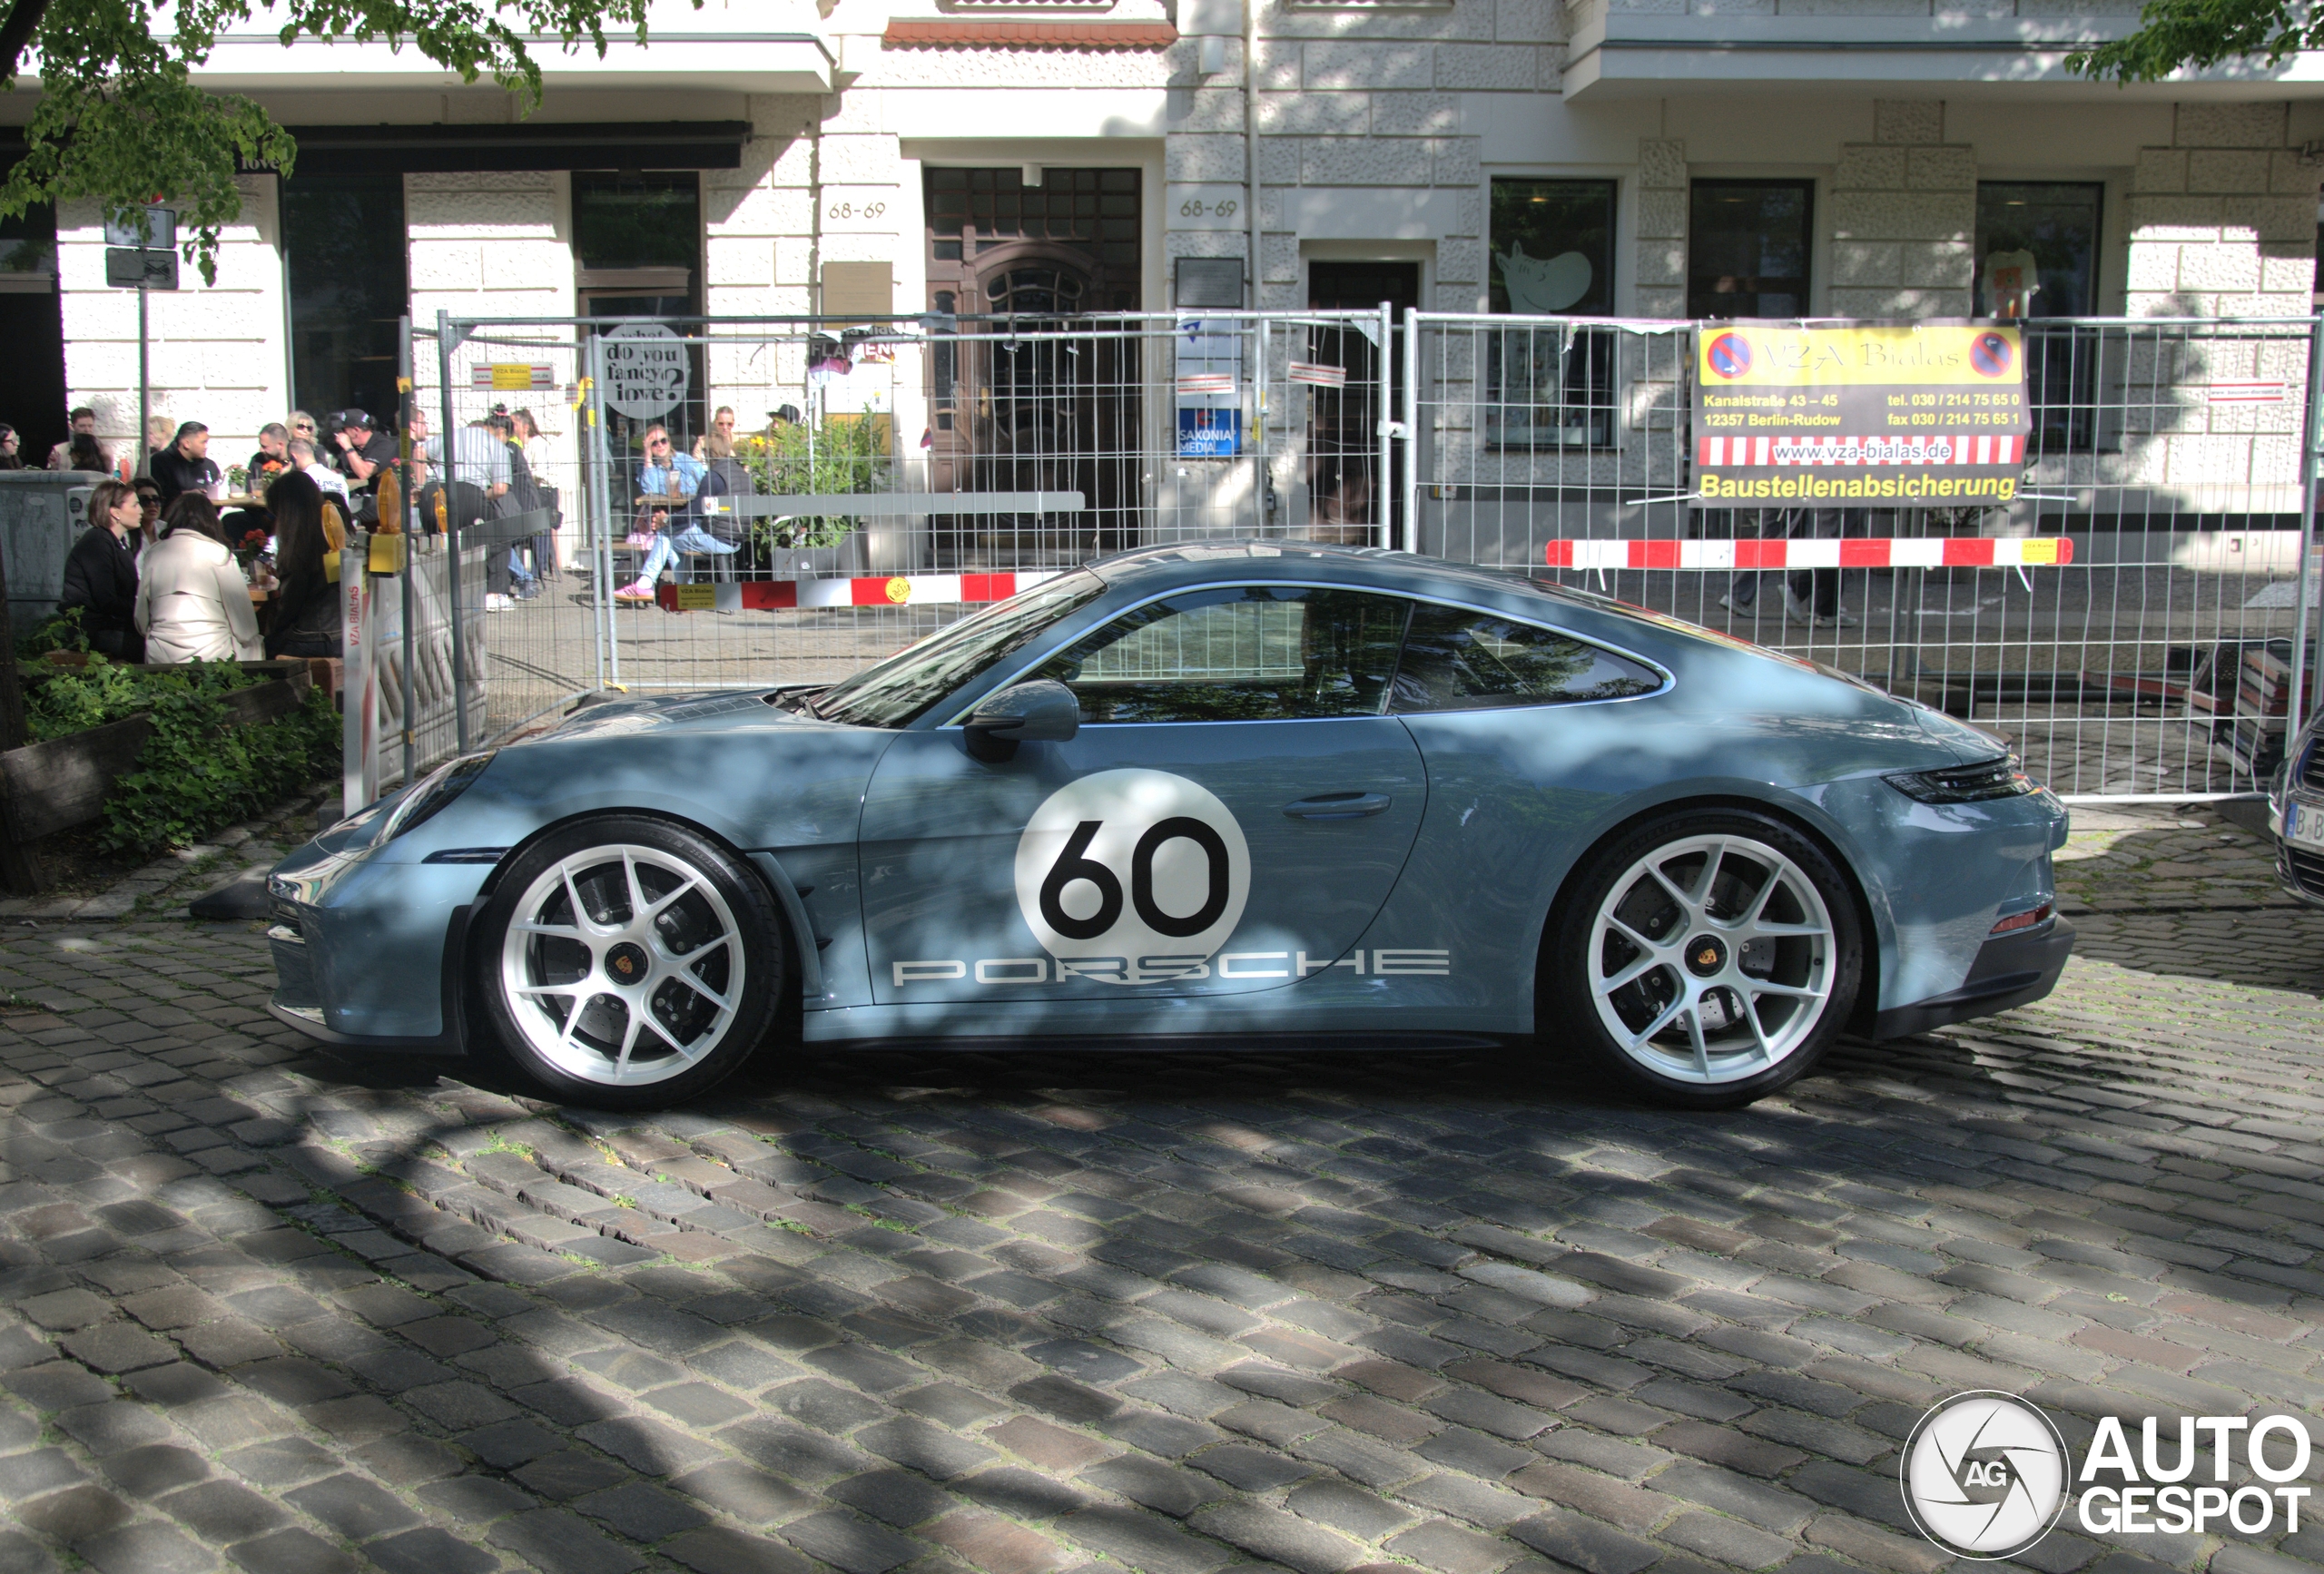 Prachtige Porsche 992 S/T gespot in Berlijn